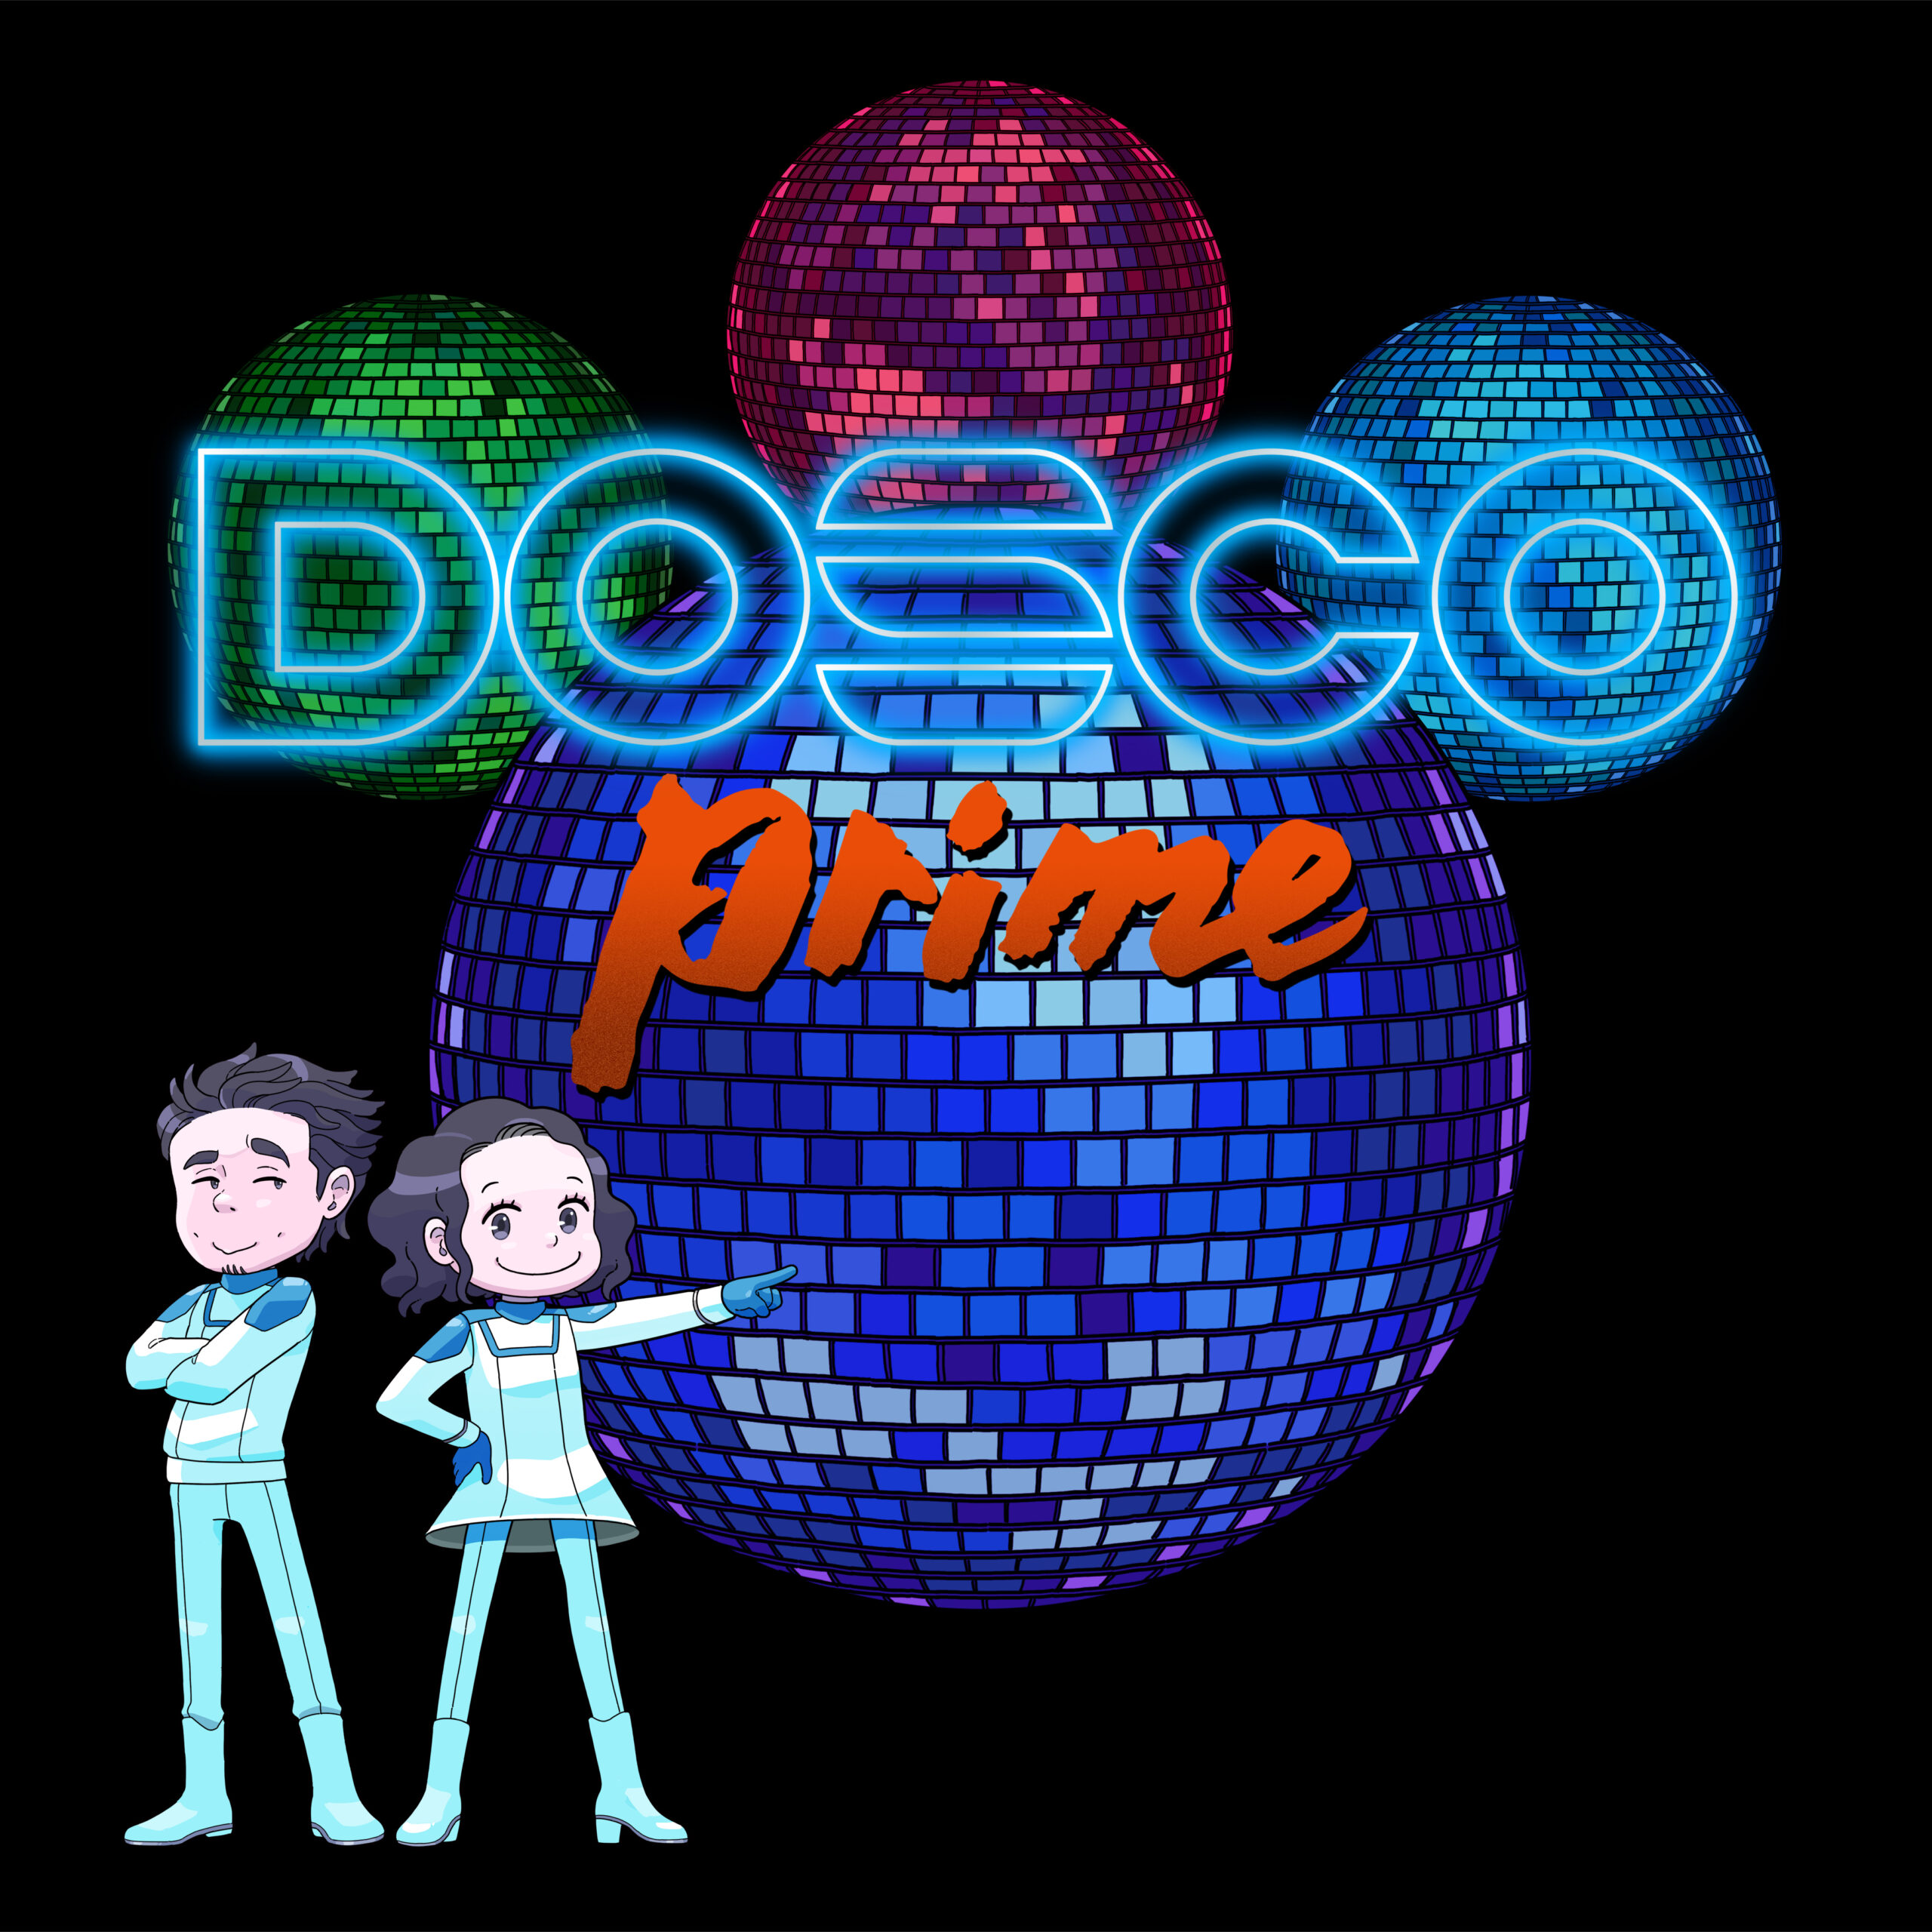 ドリカム ディスコ仕様のミラクルベスト Dosco Prime が 10月14日発売 厳選された12曲をドリカム自らの手によりディスコ仕様に変換 あの名バラードまでも Music Guide ミュージックガイド